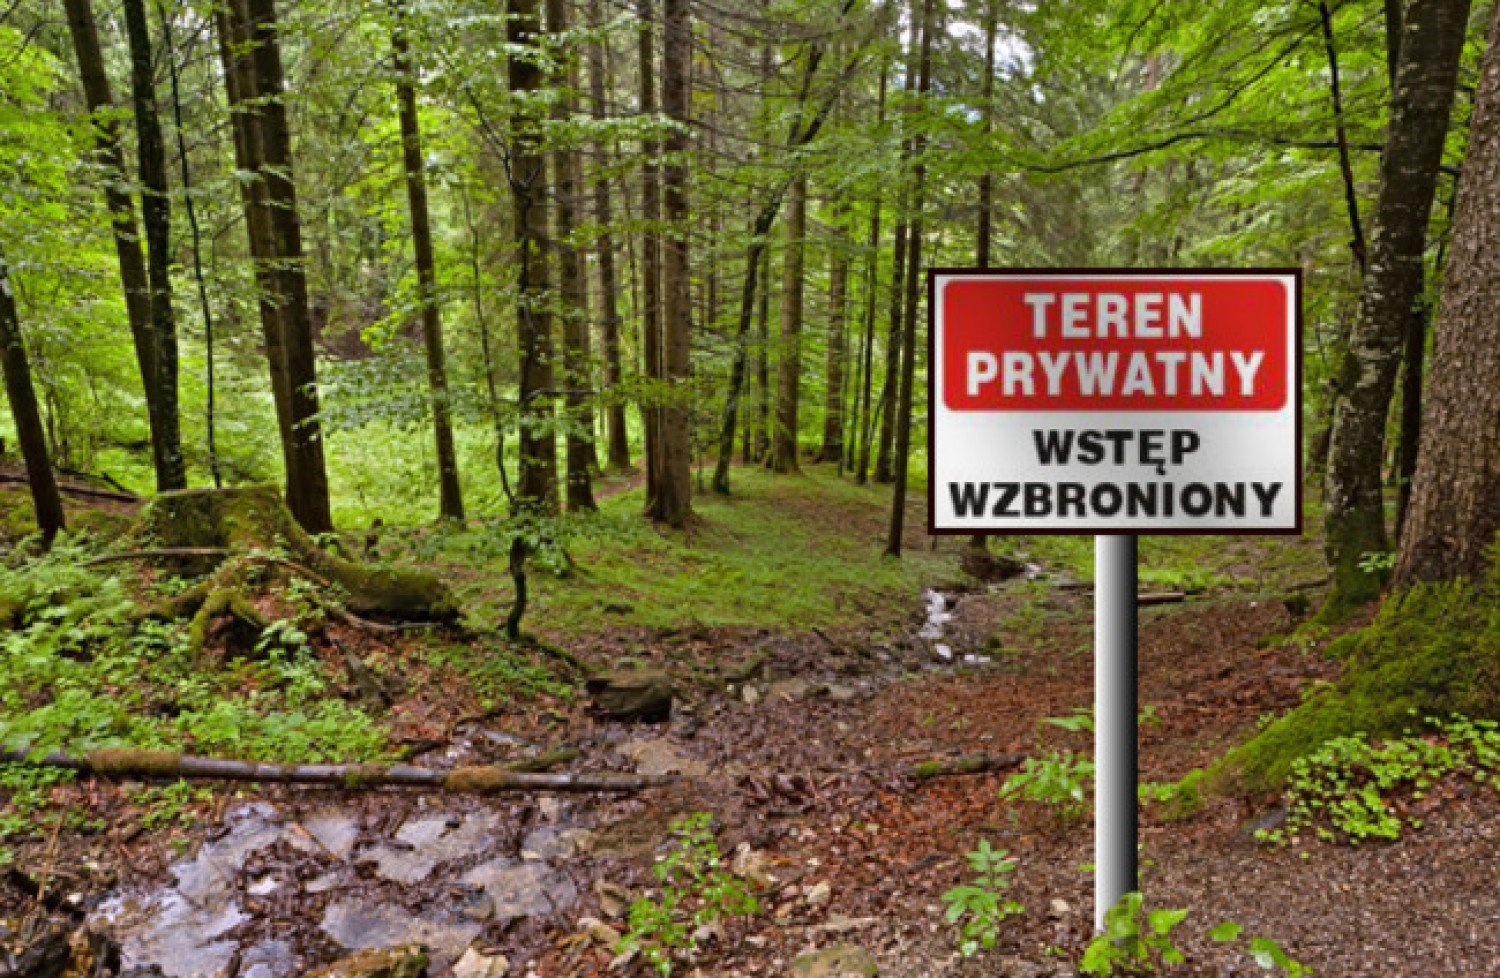 Czy las prywatny jest dla wszystkich? Mimo zakazu wszyscy wchodzą! |  Warszawa Nasze Miasto